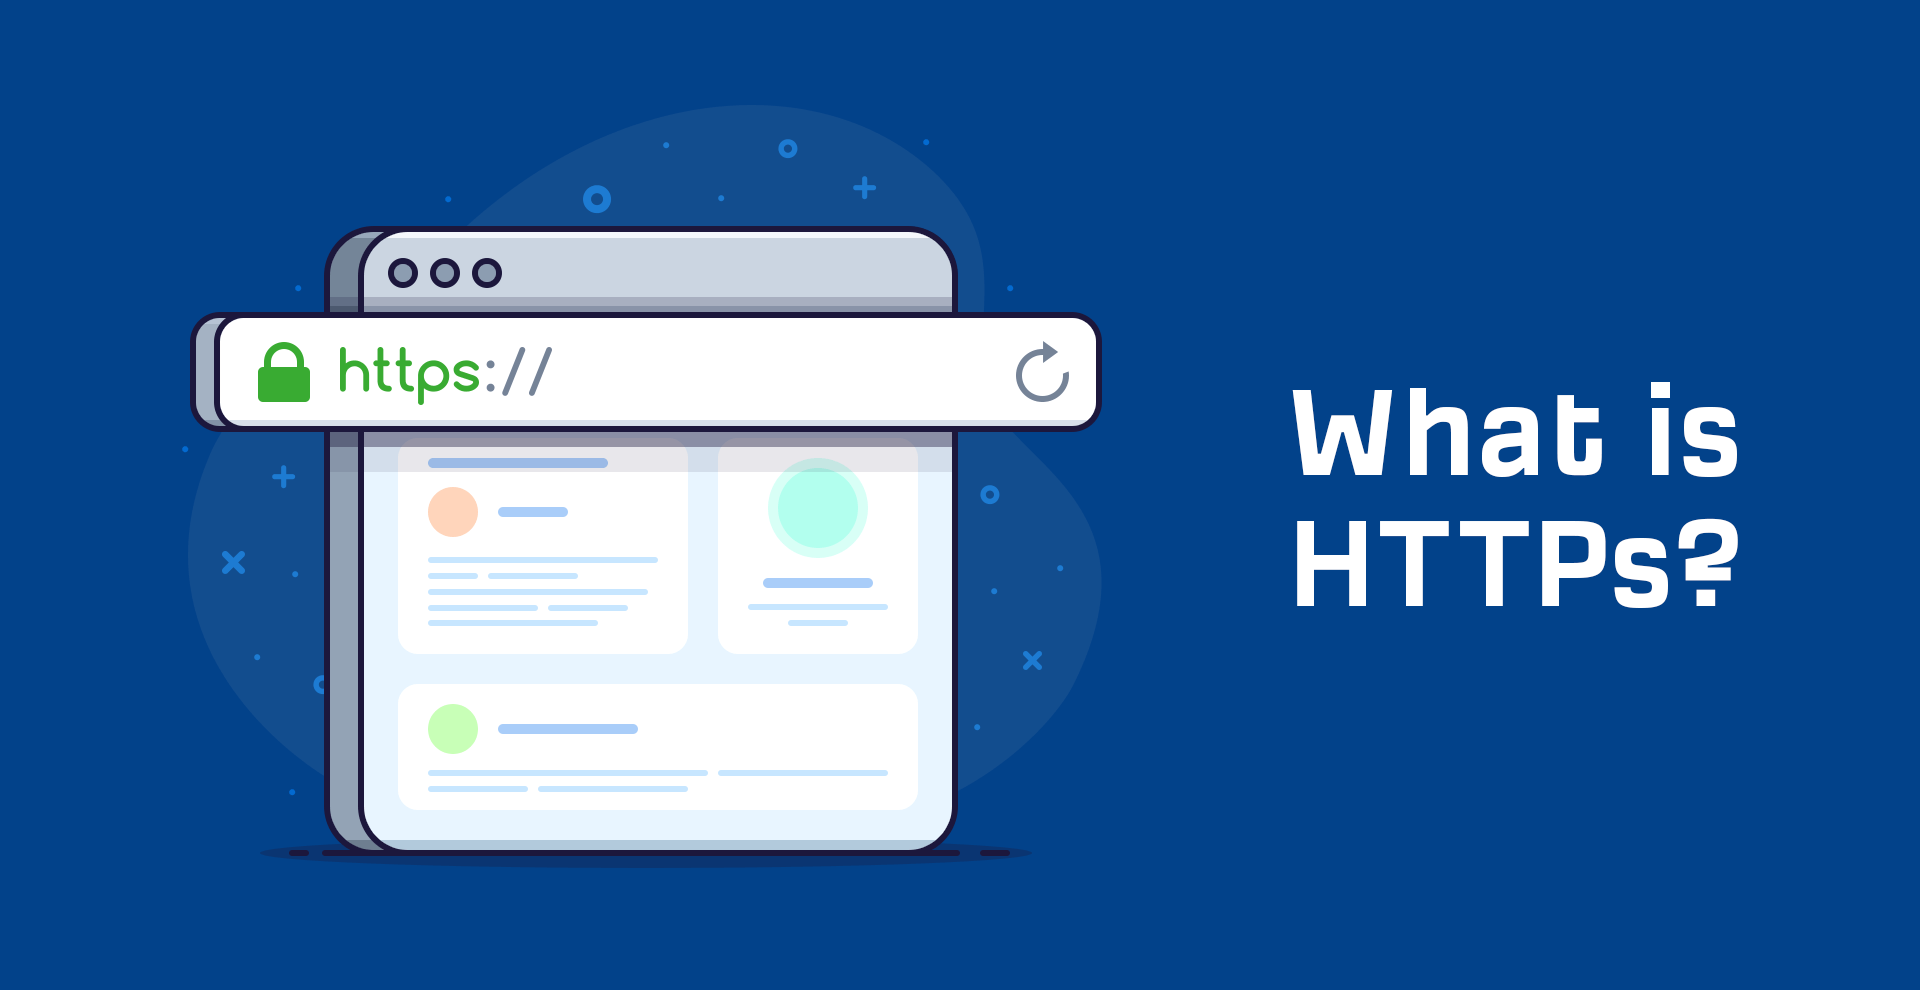 Qu’est-ce que HTTPS? Tout ce que tu as besoin de savoir